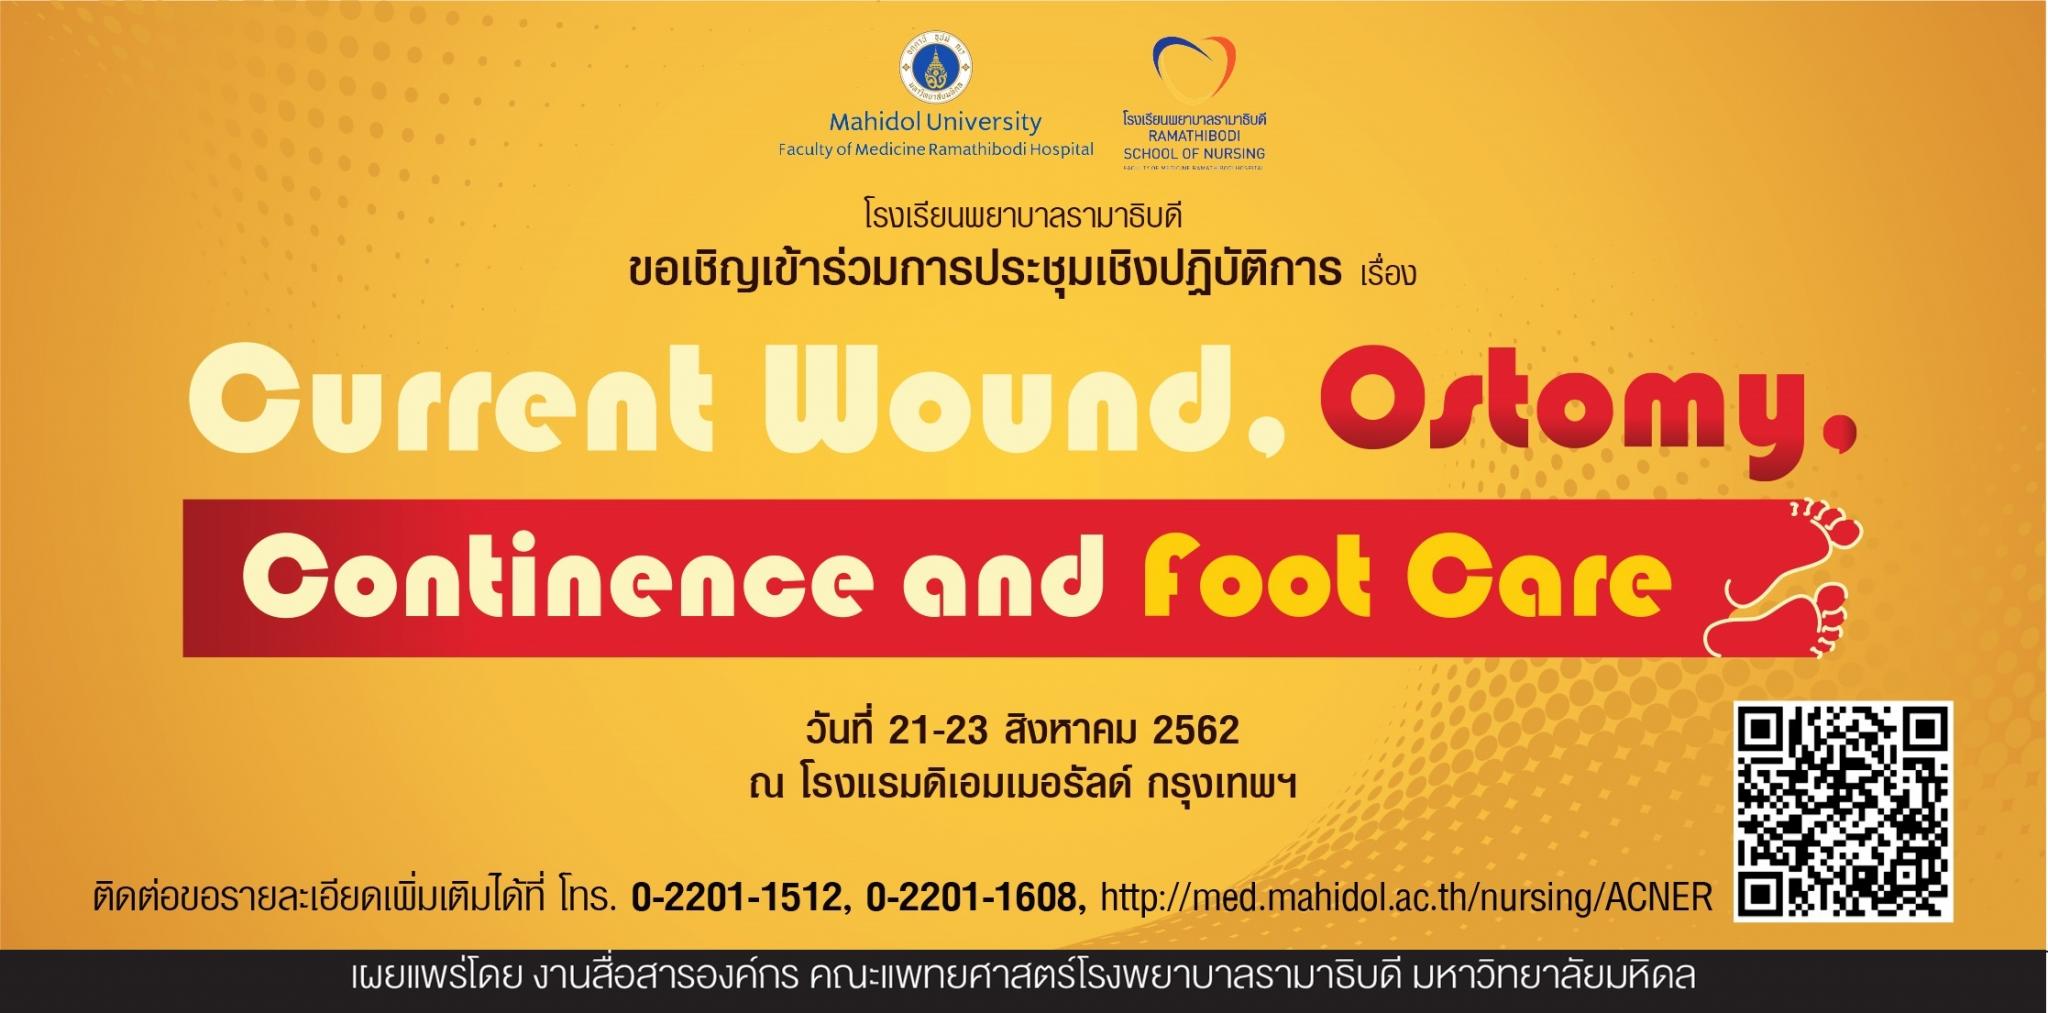 ขอเชิญเข้าร่วมการประชุมวิชาการ เรื่อง Current Wound, Ostomy, Continence and Foot Care